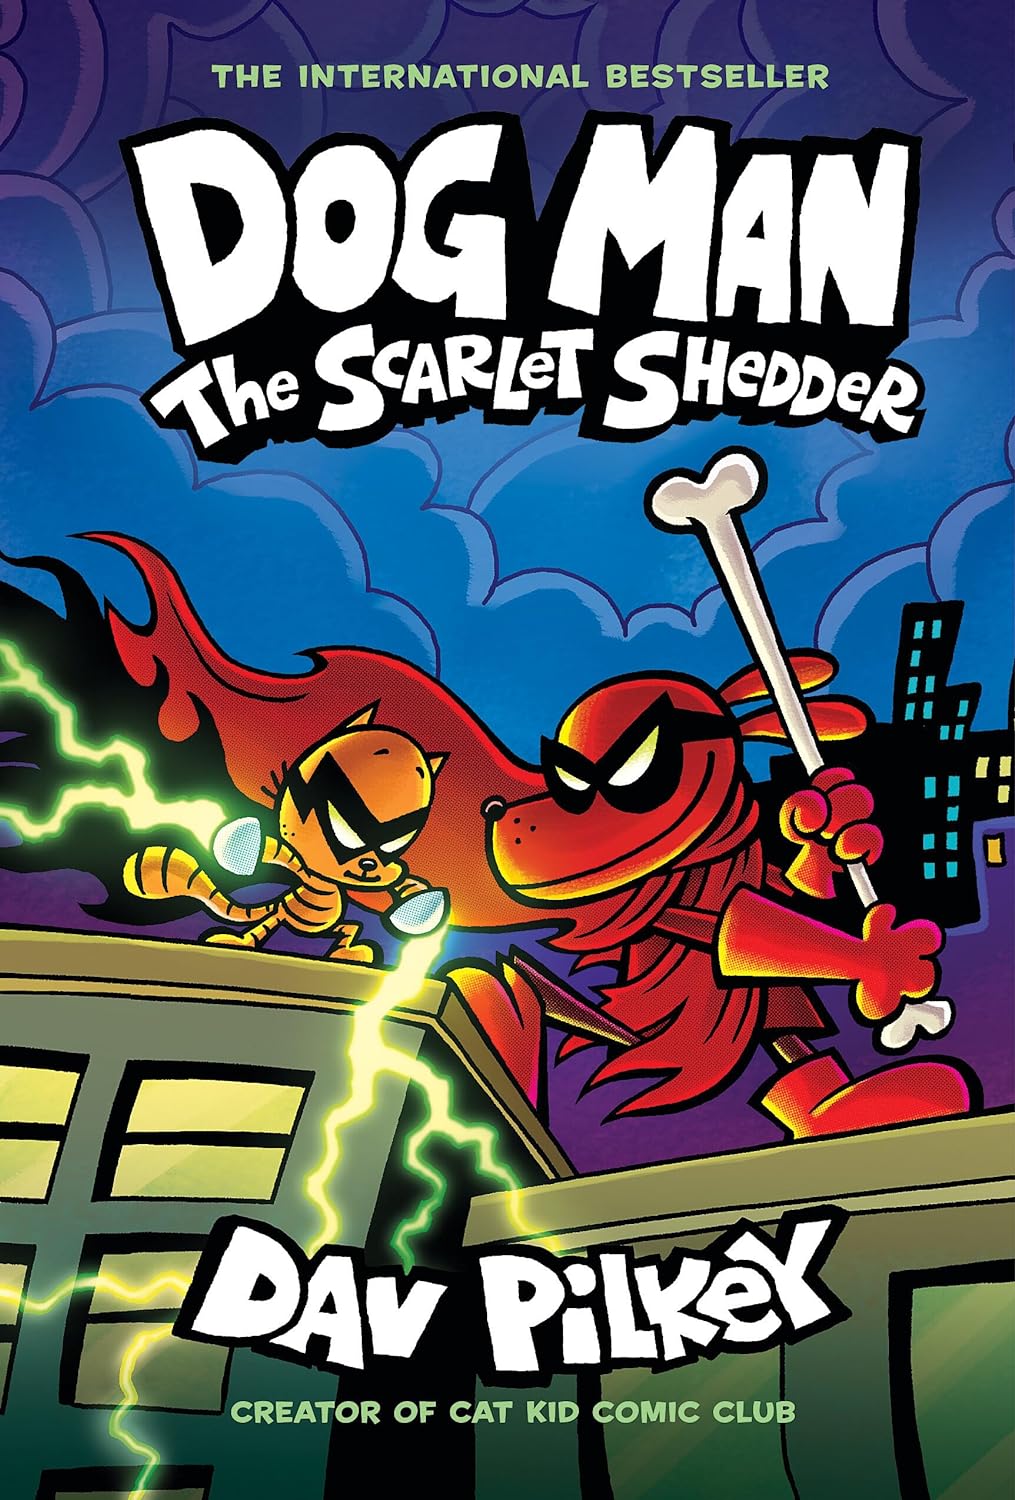 Dog Man: The Scarlet Shredder by Dav Pilkey